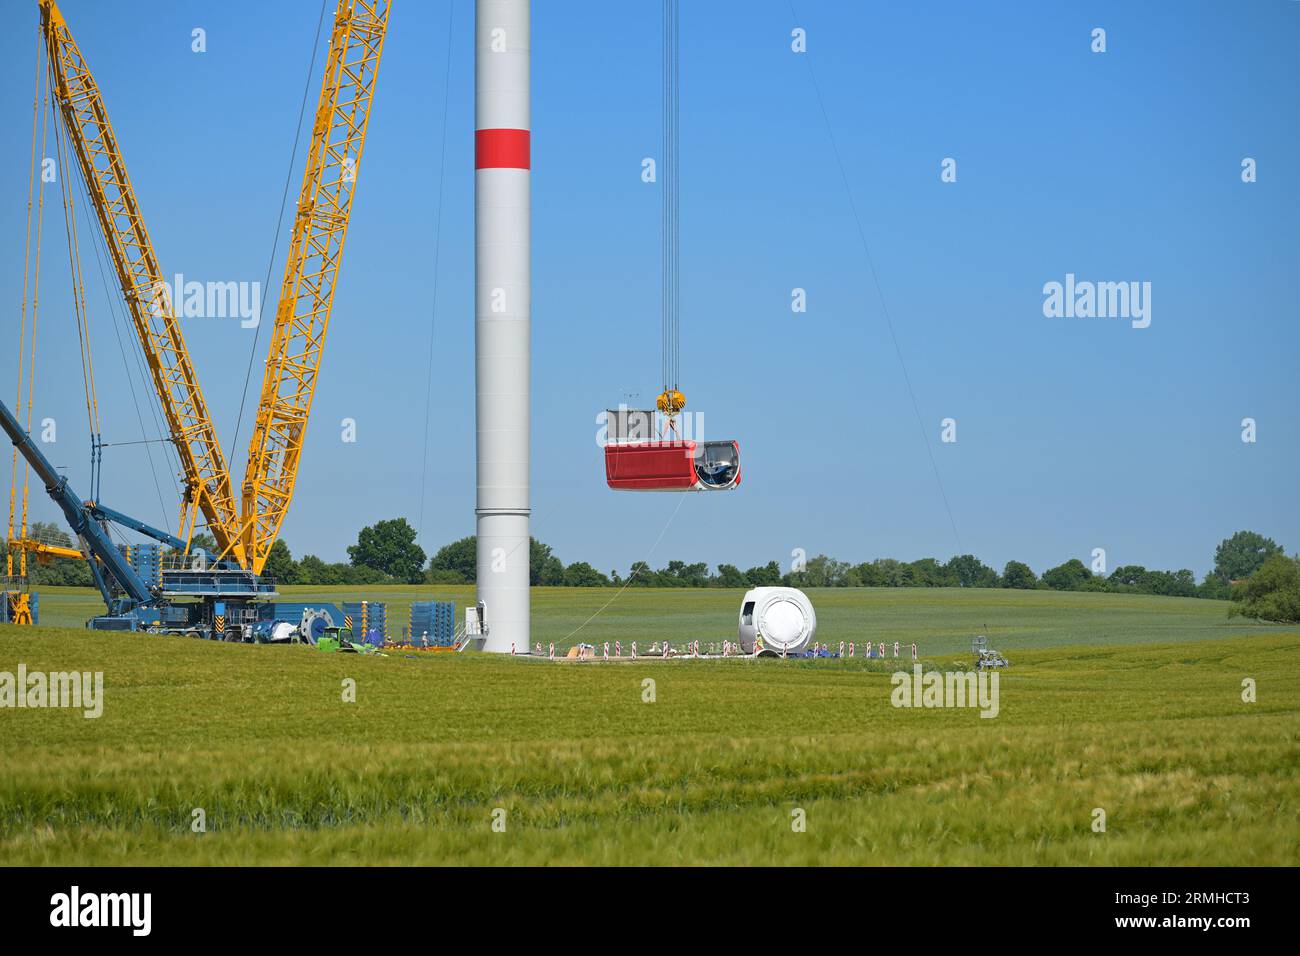 Baustelle einer Windkraftanlage, Kran, der das Maschinenhaus hebt, um es auf dem Turm zu installieren, Konzept für erneuerbare Energie und Energie, blauer Himmel, Kopierraum Stockfoto